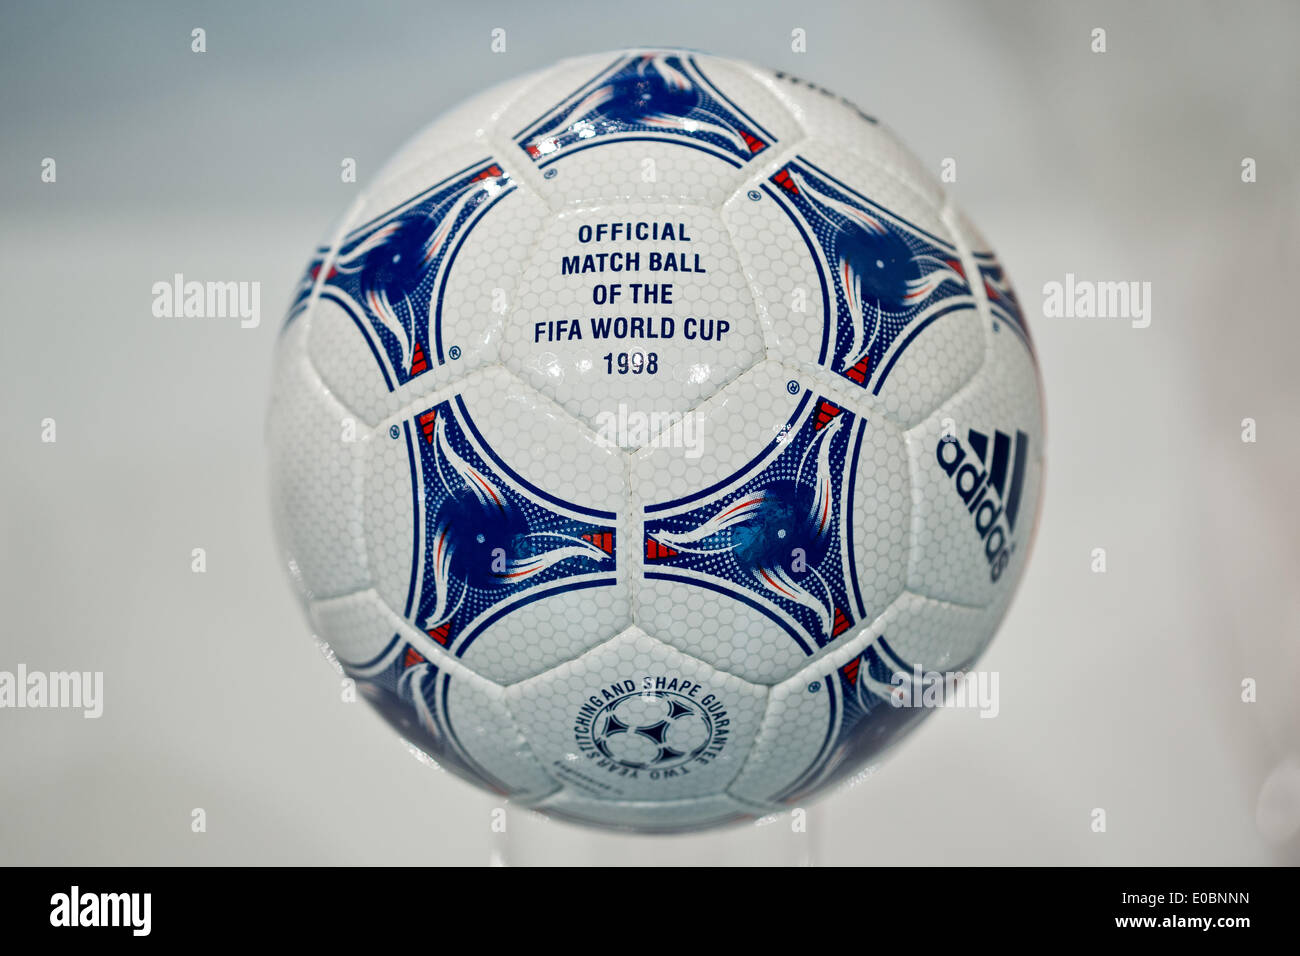 Fürth, Allemagne. Le 08 mai, 2014. L 'Tricolore' ballon de football qui  était le ballon officiel de la coupe du monde de football 1998 en France  est représenté au cours de l'assemblée